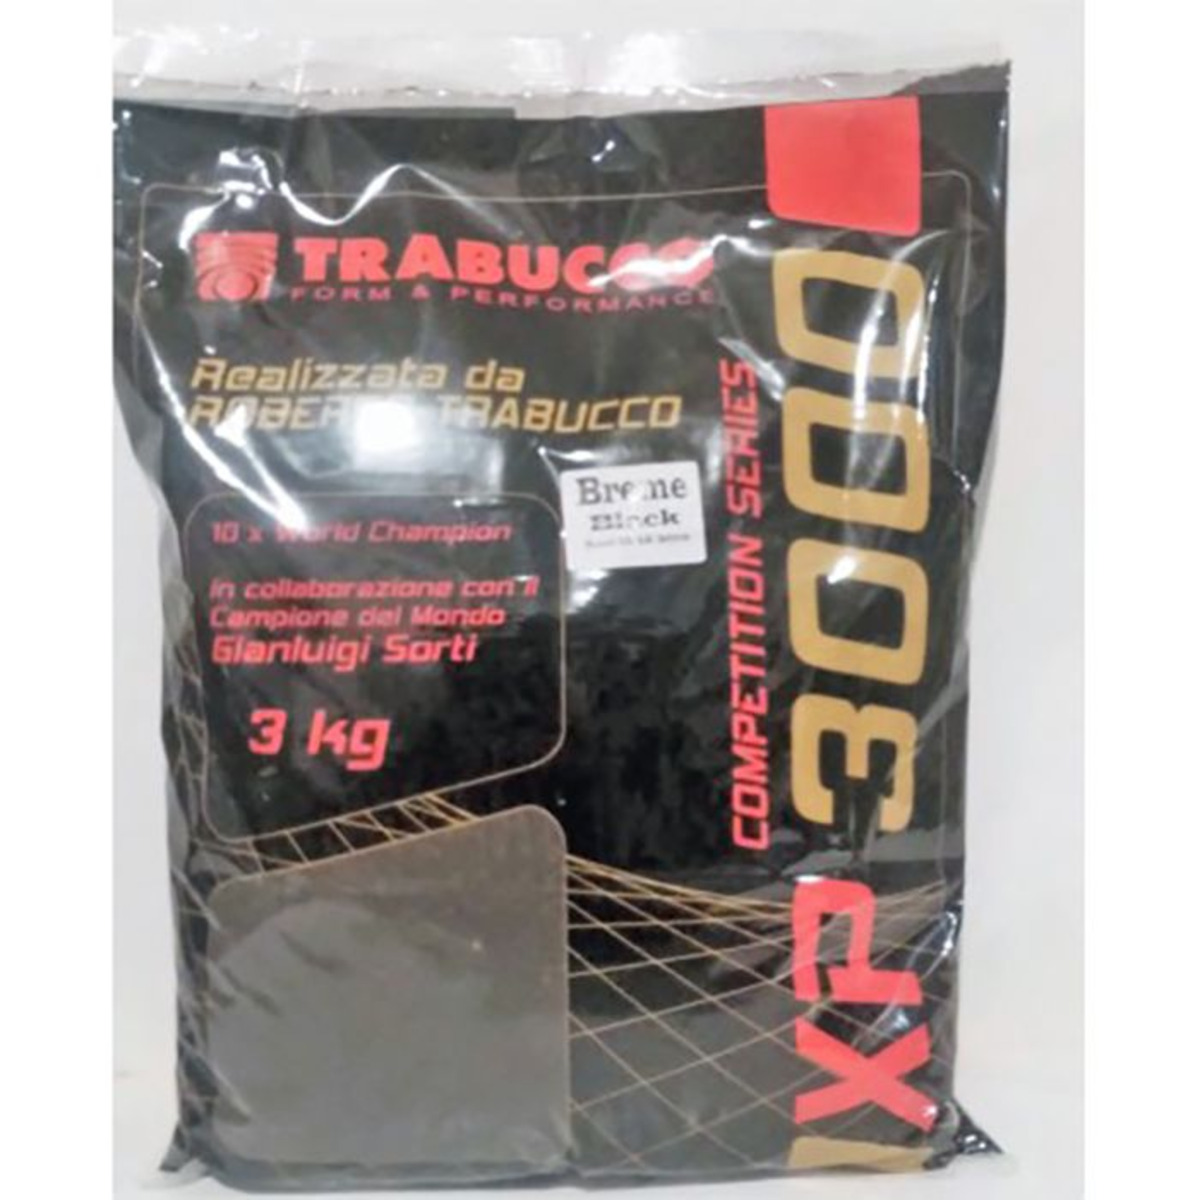 Trabucco Pastura XP 3000 - 3 Kg - Breme Black         